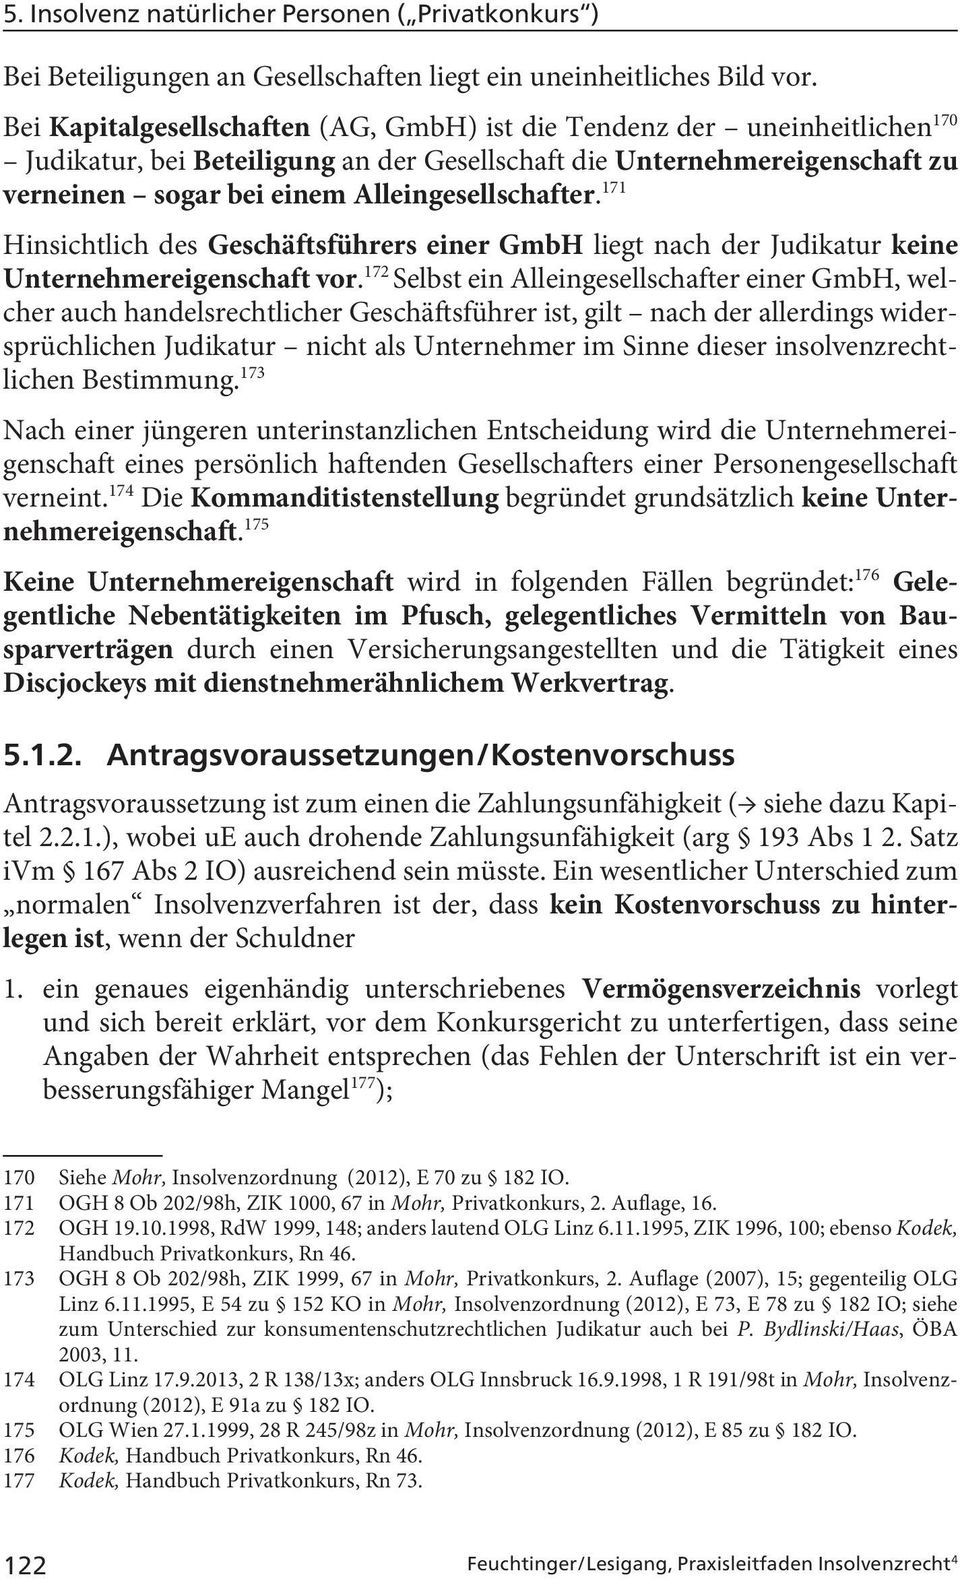 Alleingesellschafter. 171 Hinsichtlich des Geschäftsführers einer GmbH liegt nach der Judikatur keine Unternehmereigenschaft vor.